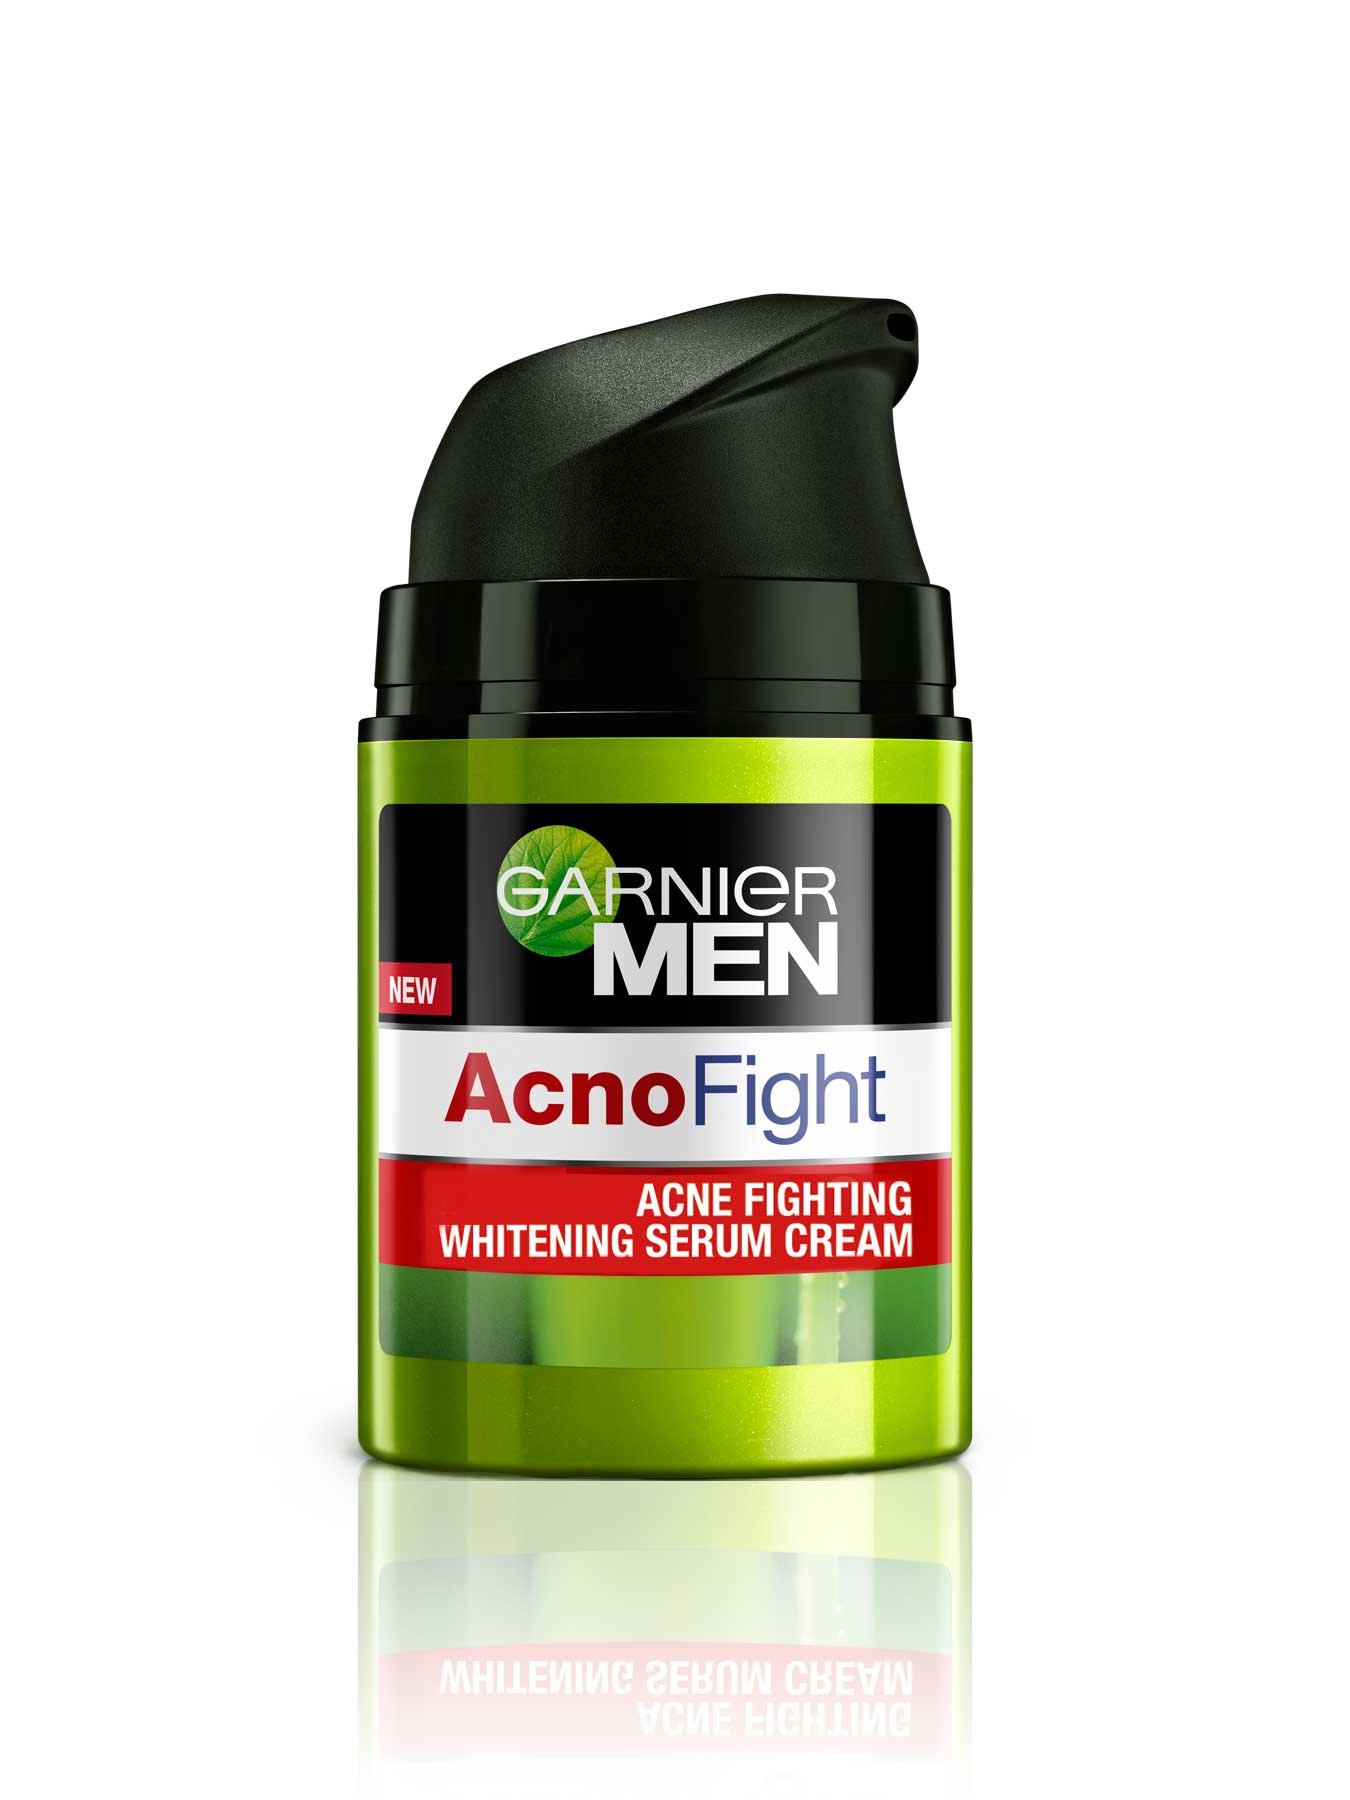 acno fight acne fighting whitening serum cream 20ml 8992304048340_t3-min